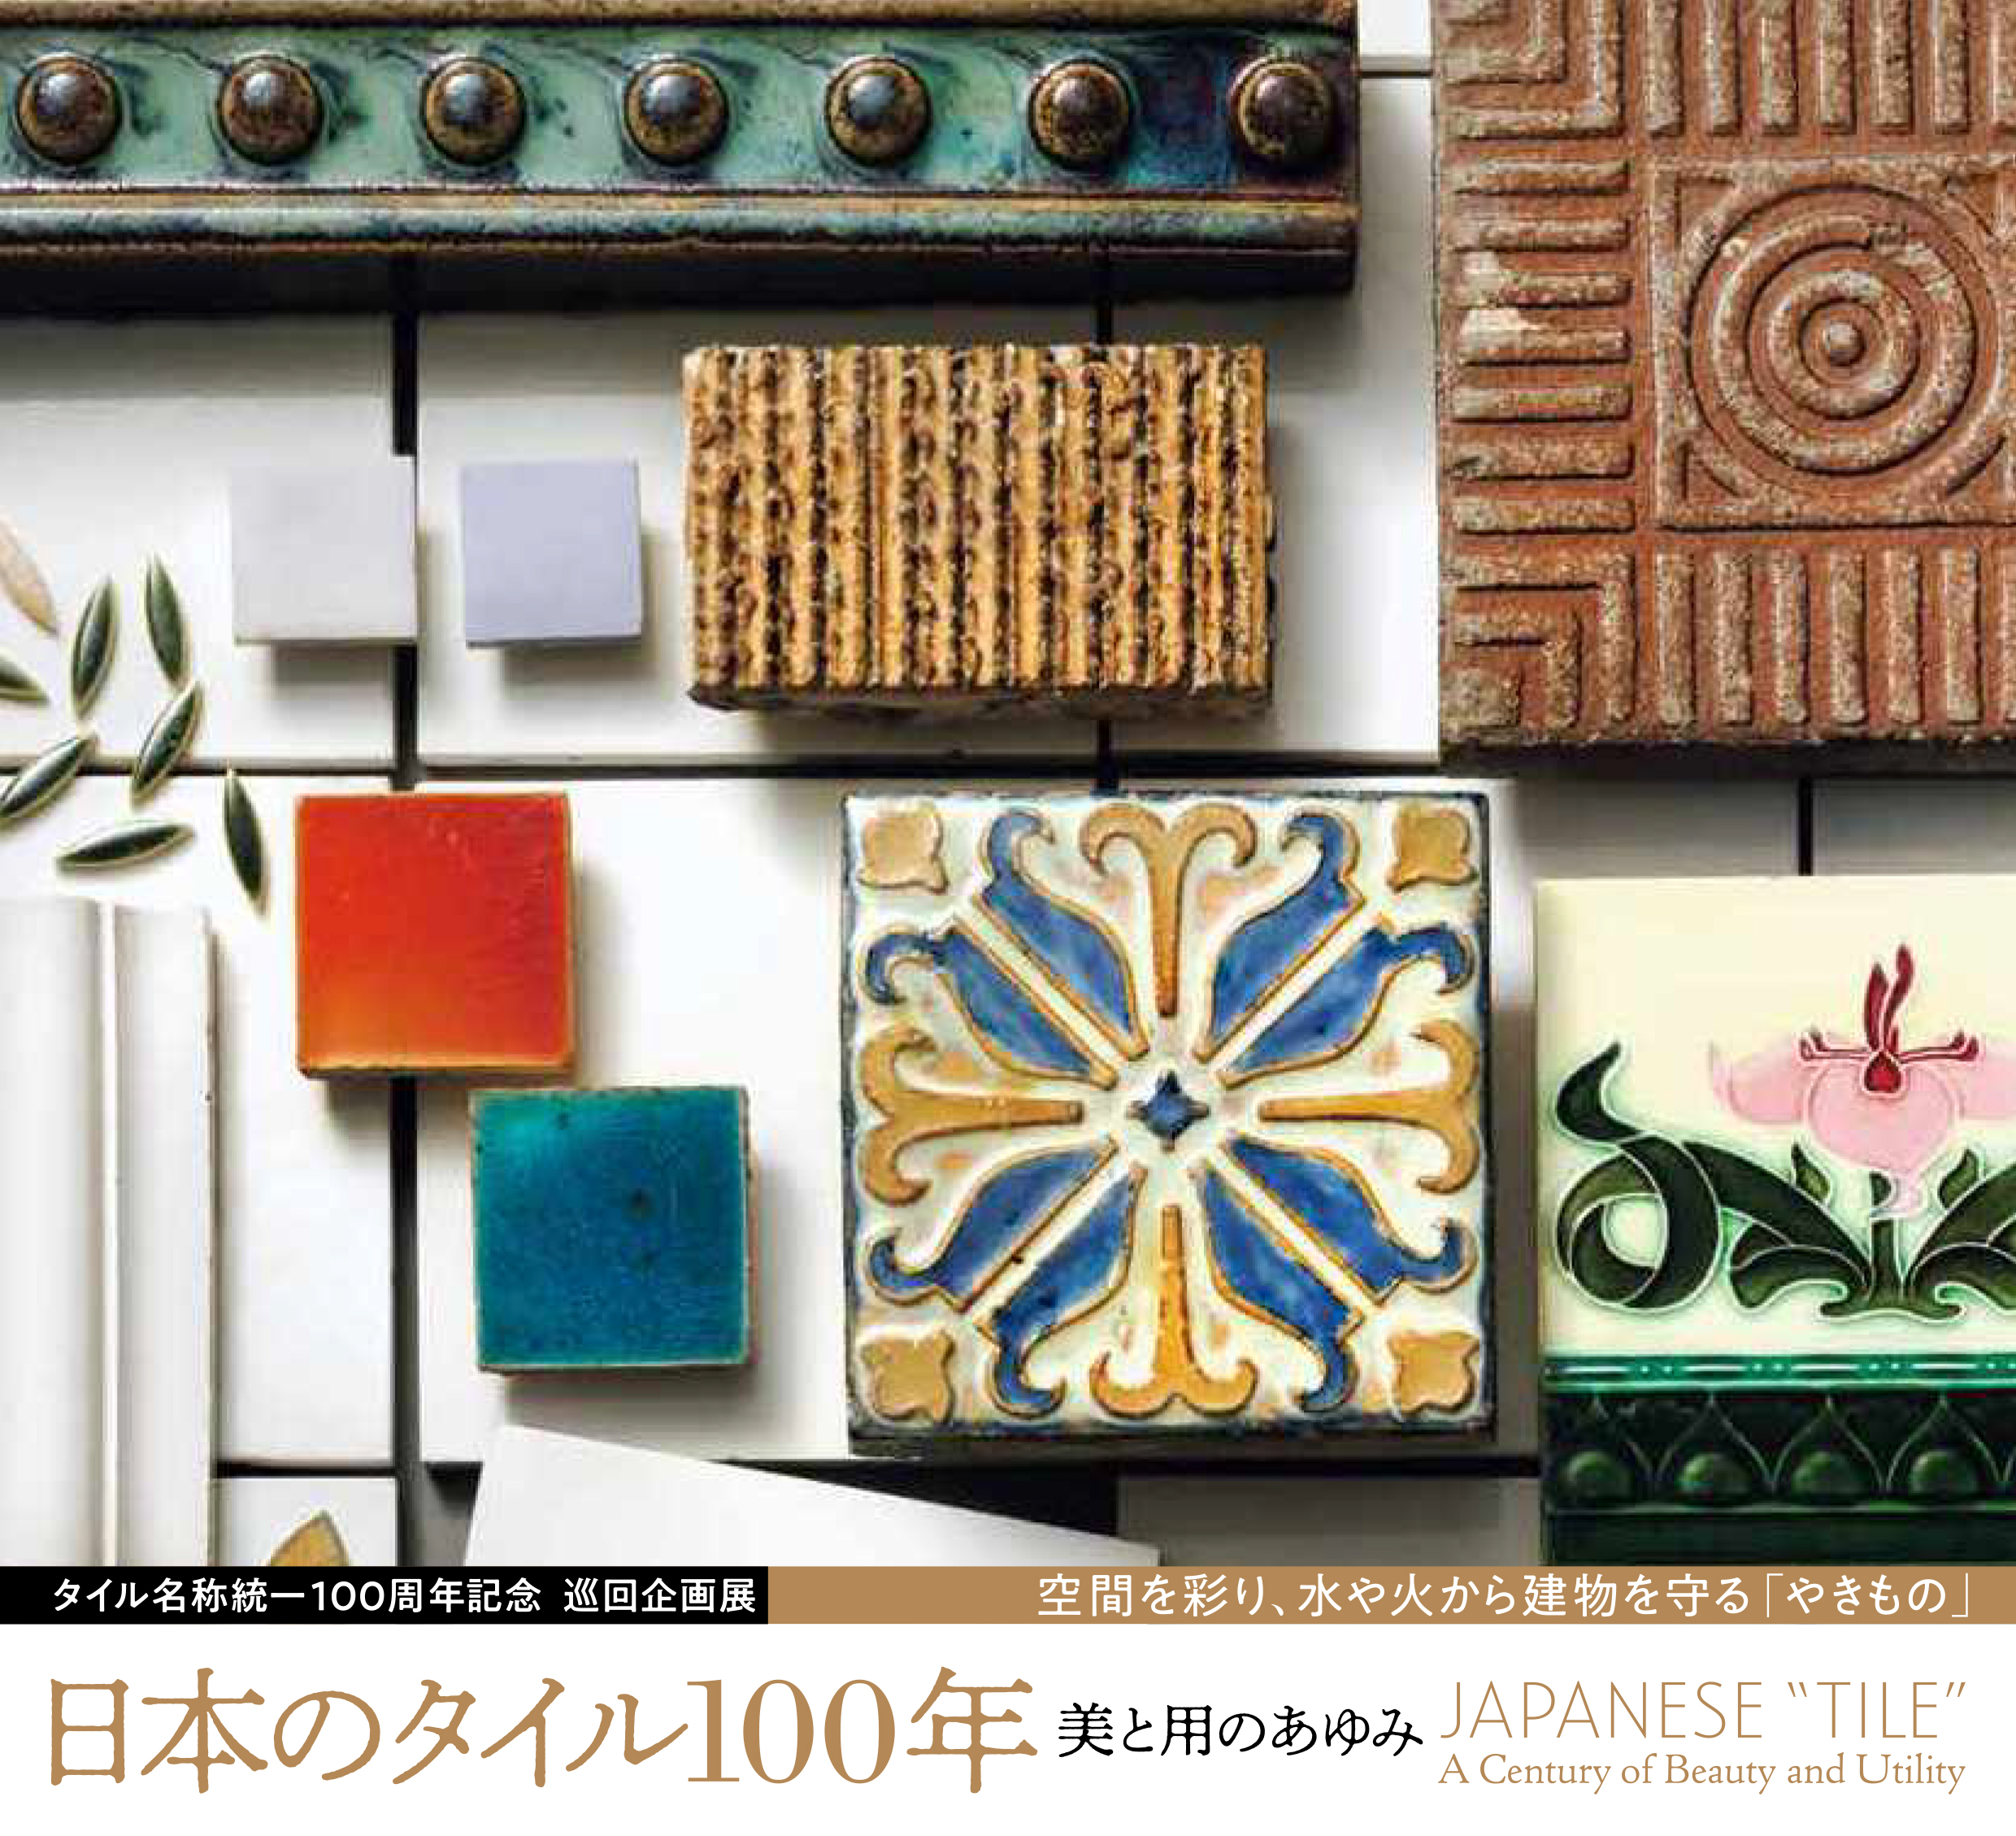 タイル名称統一100周年記念 巡回企画展 「日本のタイル100年――美と用のあゆみ」 サムネイル画像